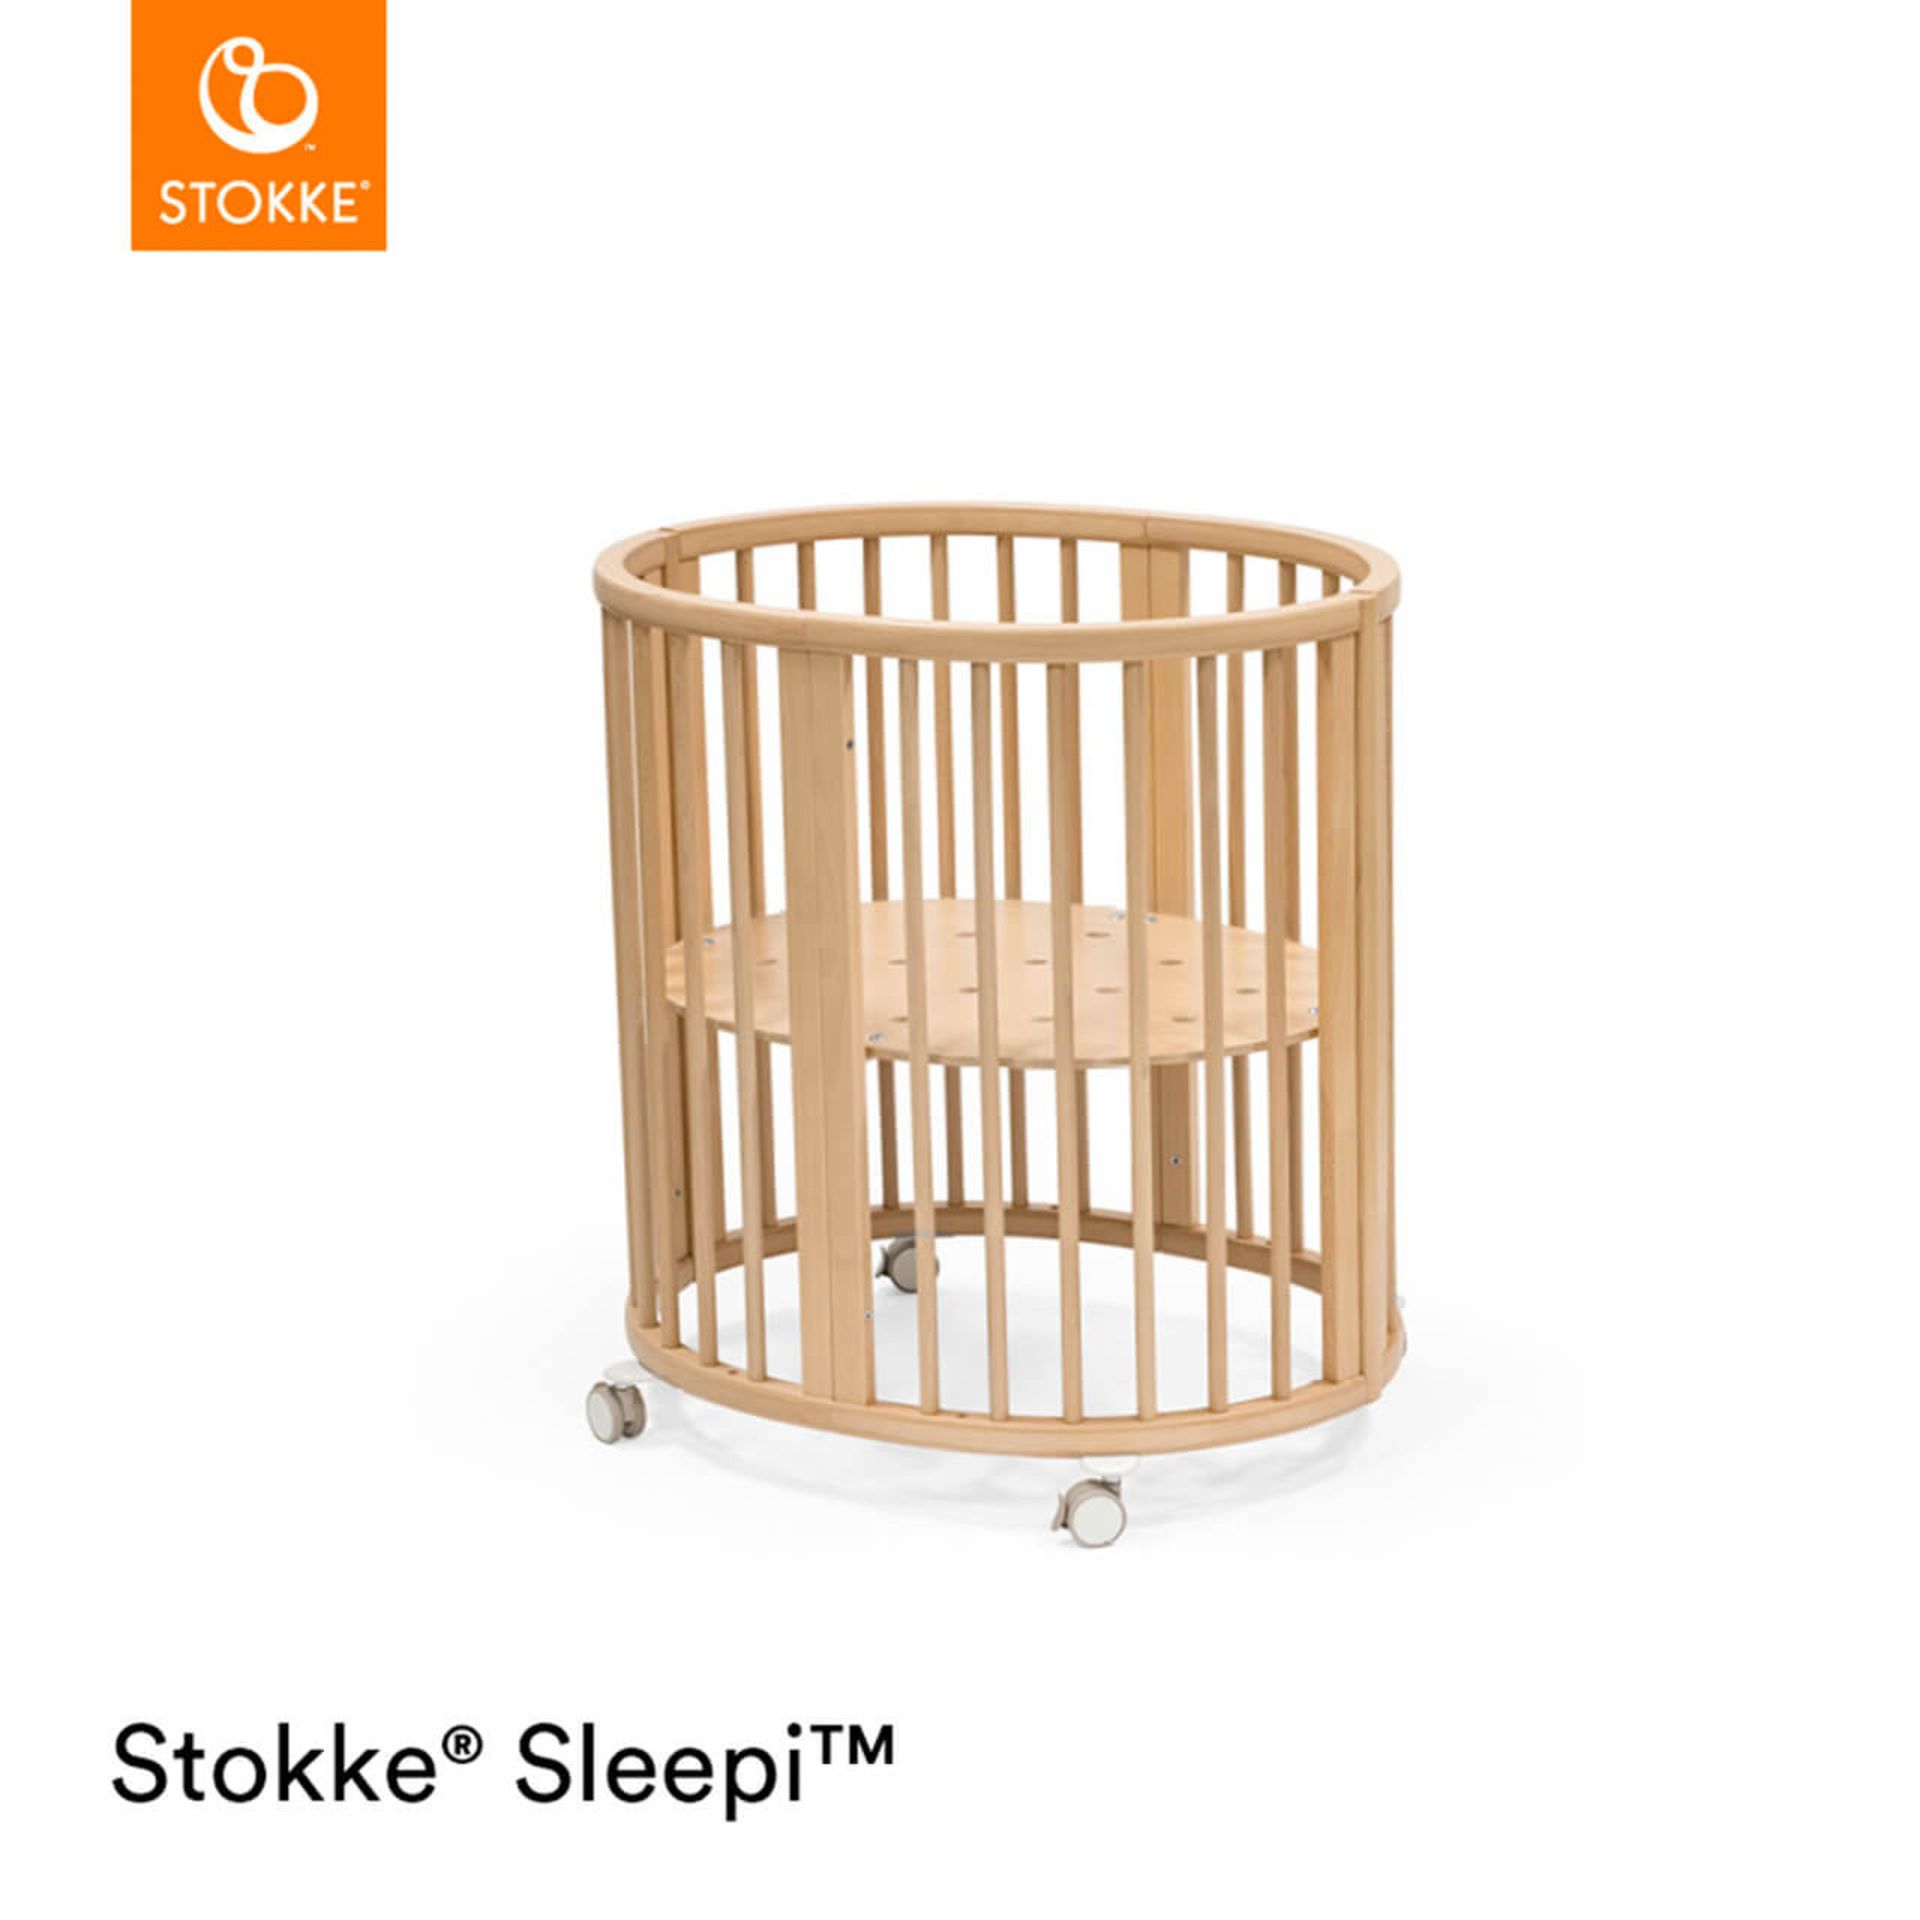 STOKKE SLEEPI MINI LIGHT OAK CRIB WITH ACCESSORIES - EX DISPLAY RRP £365 (Saleroom location: E11)